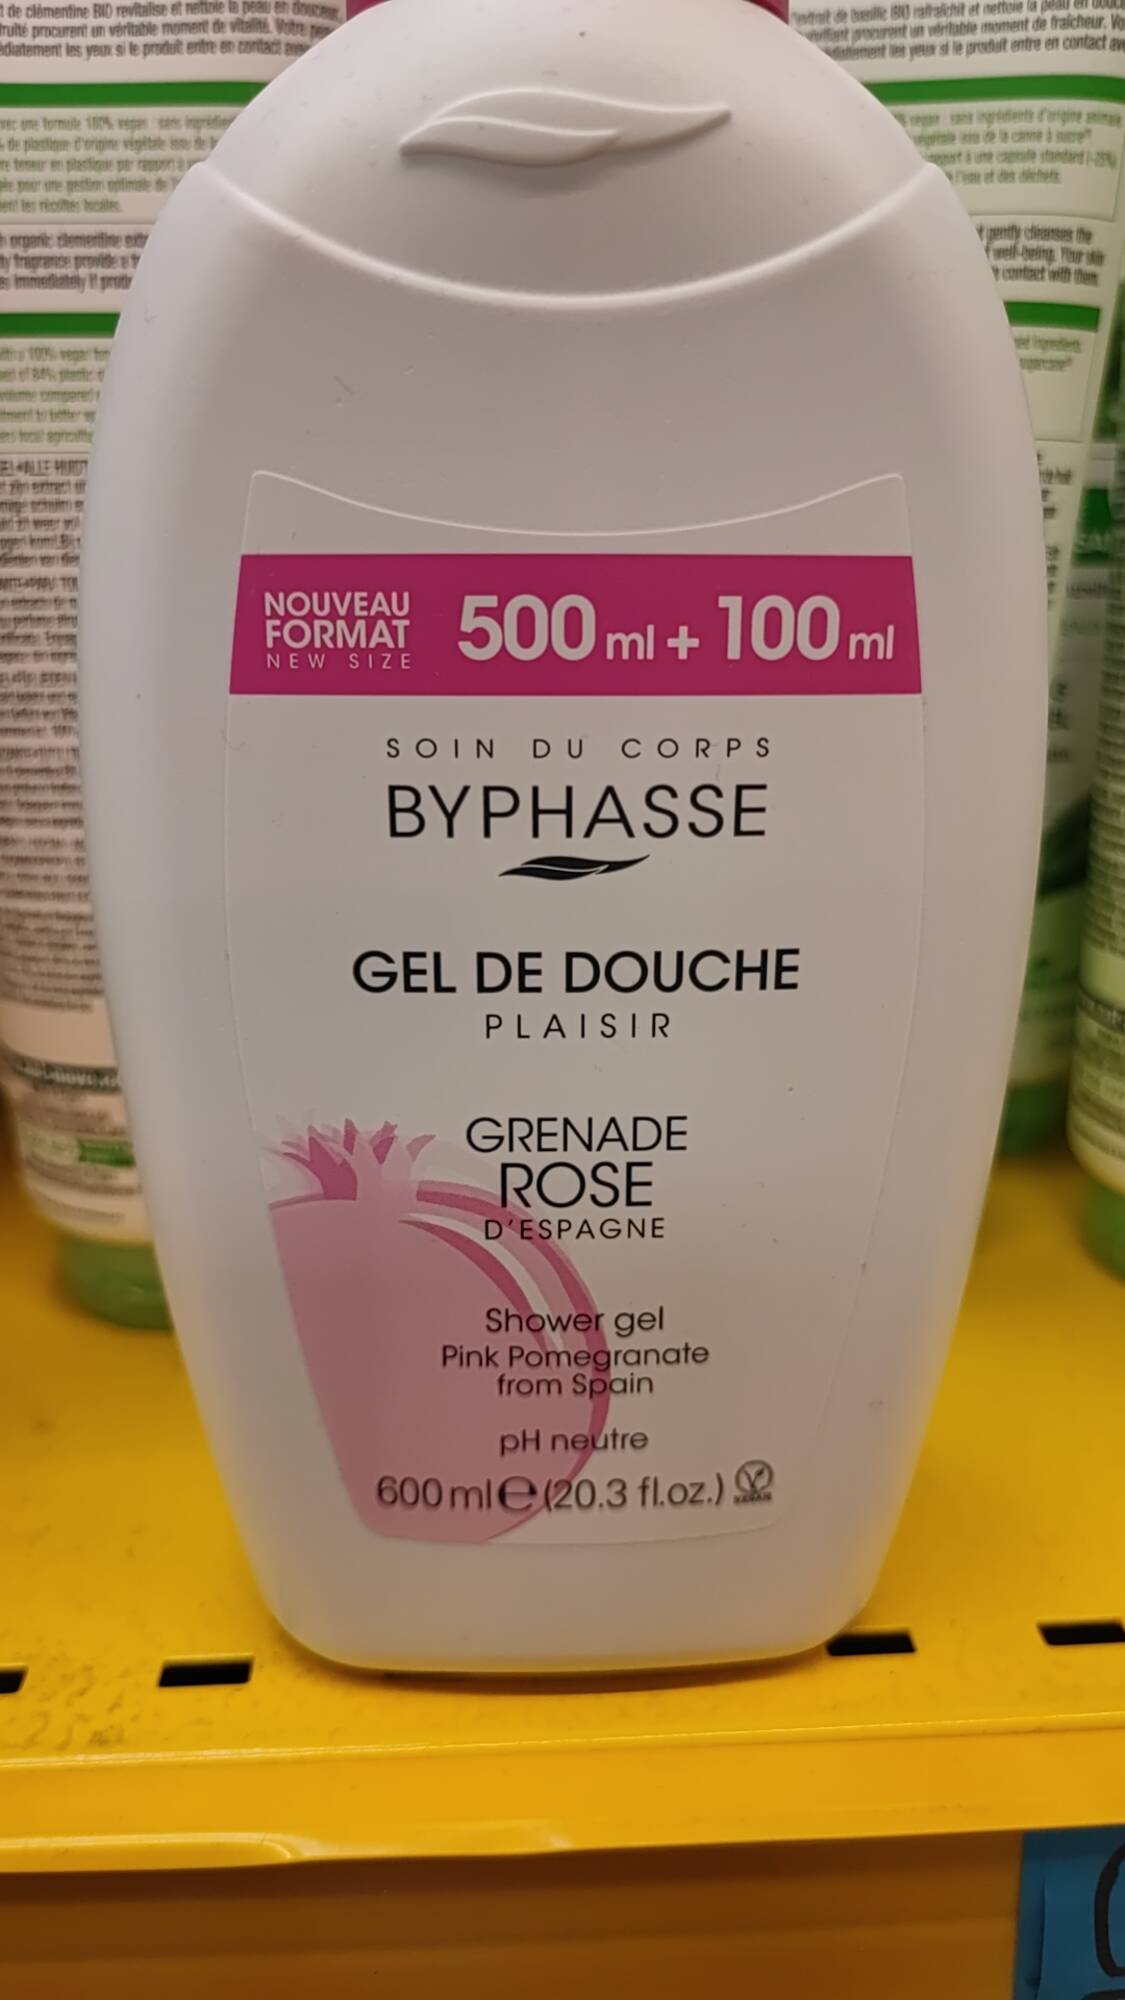 BYPHASSE - Grenade rose d'Espagne - Gel de douche plaisir